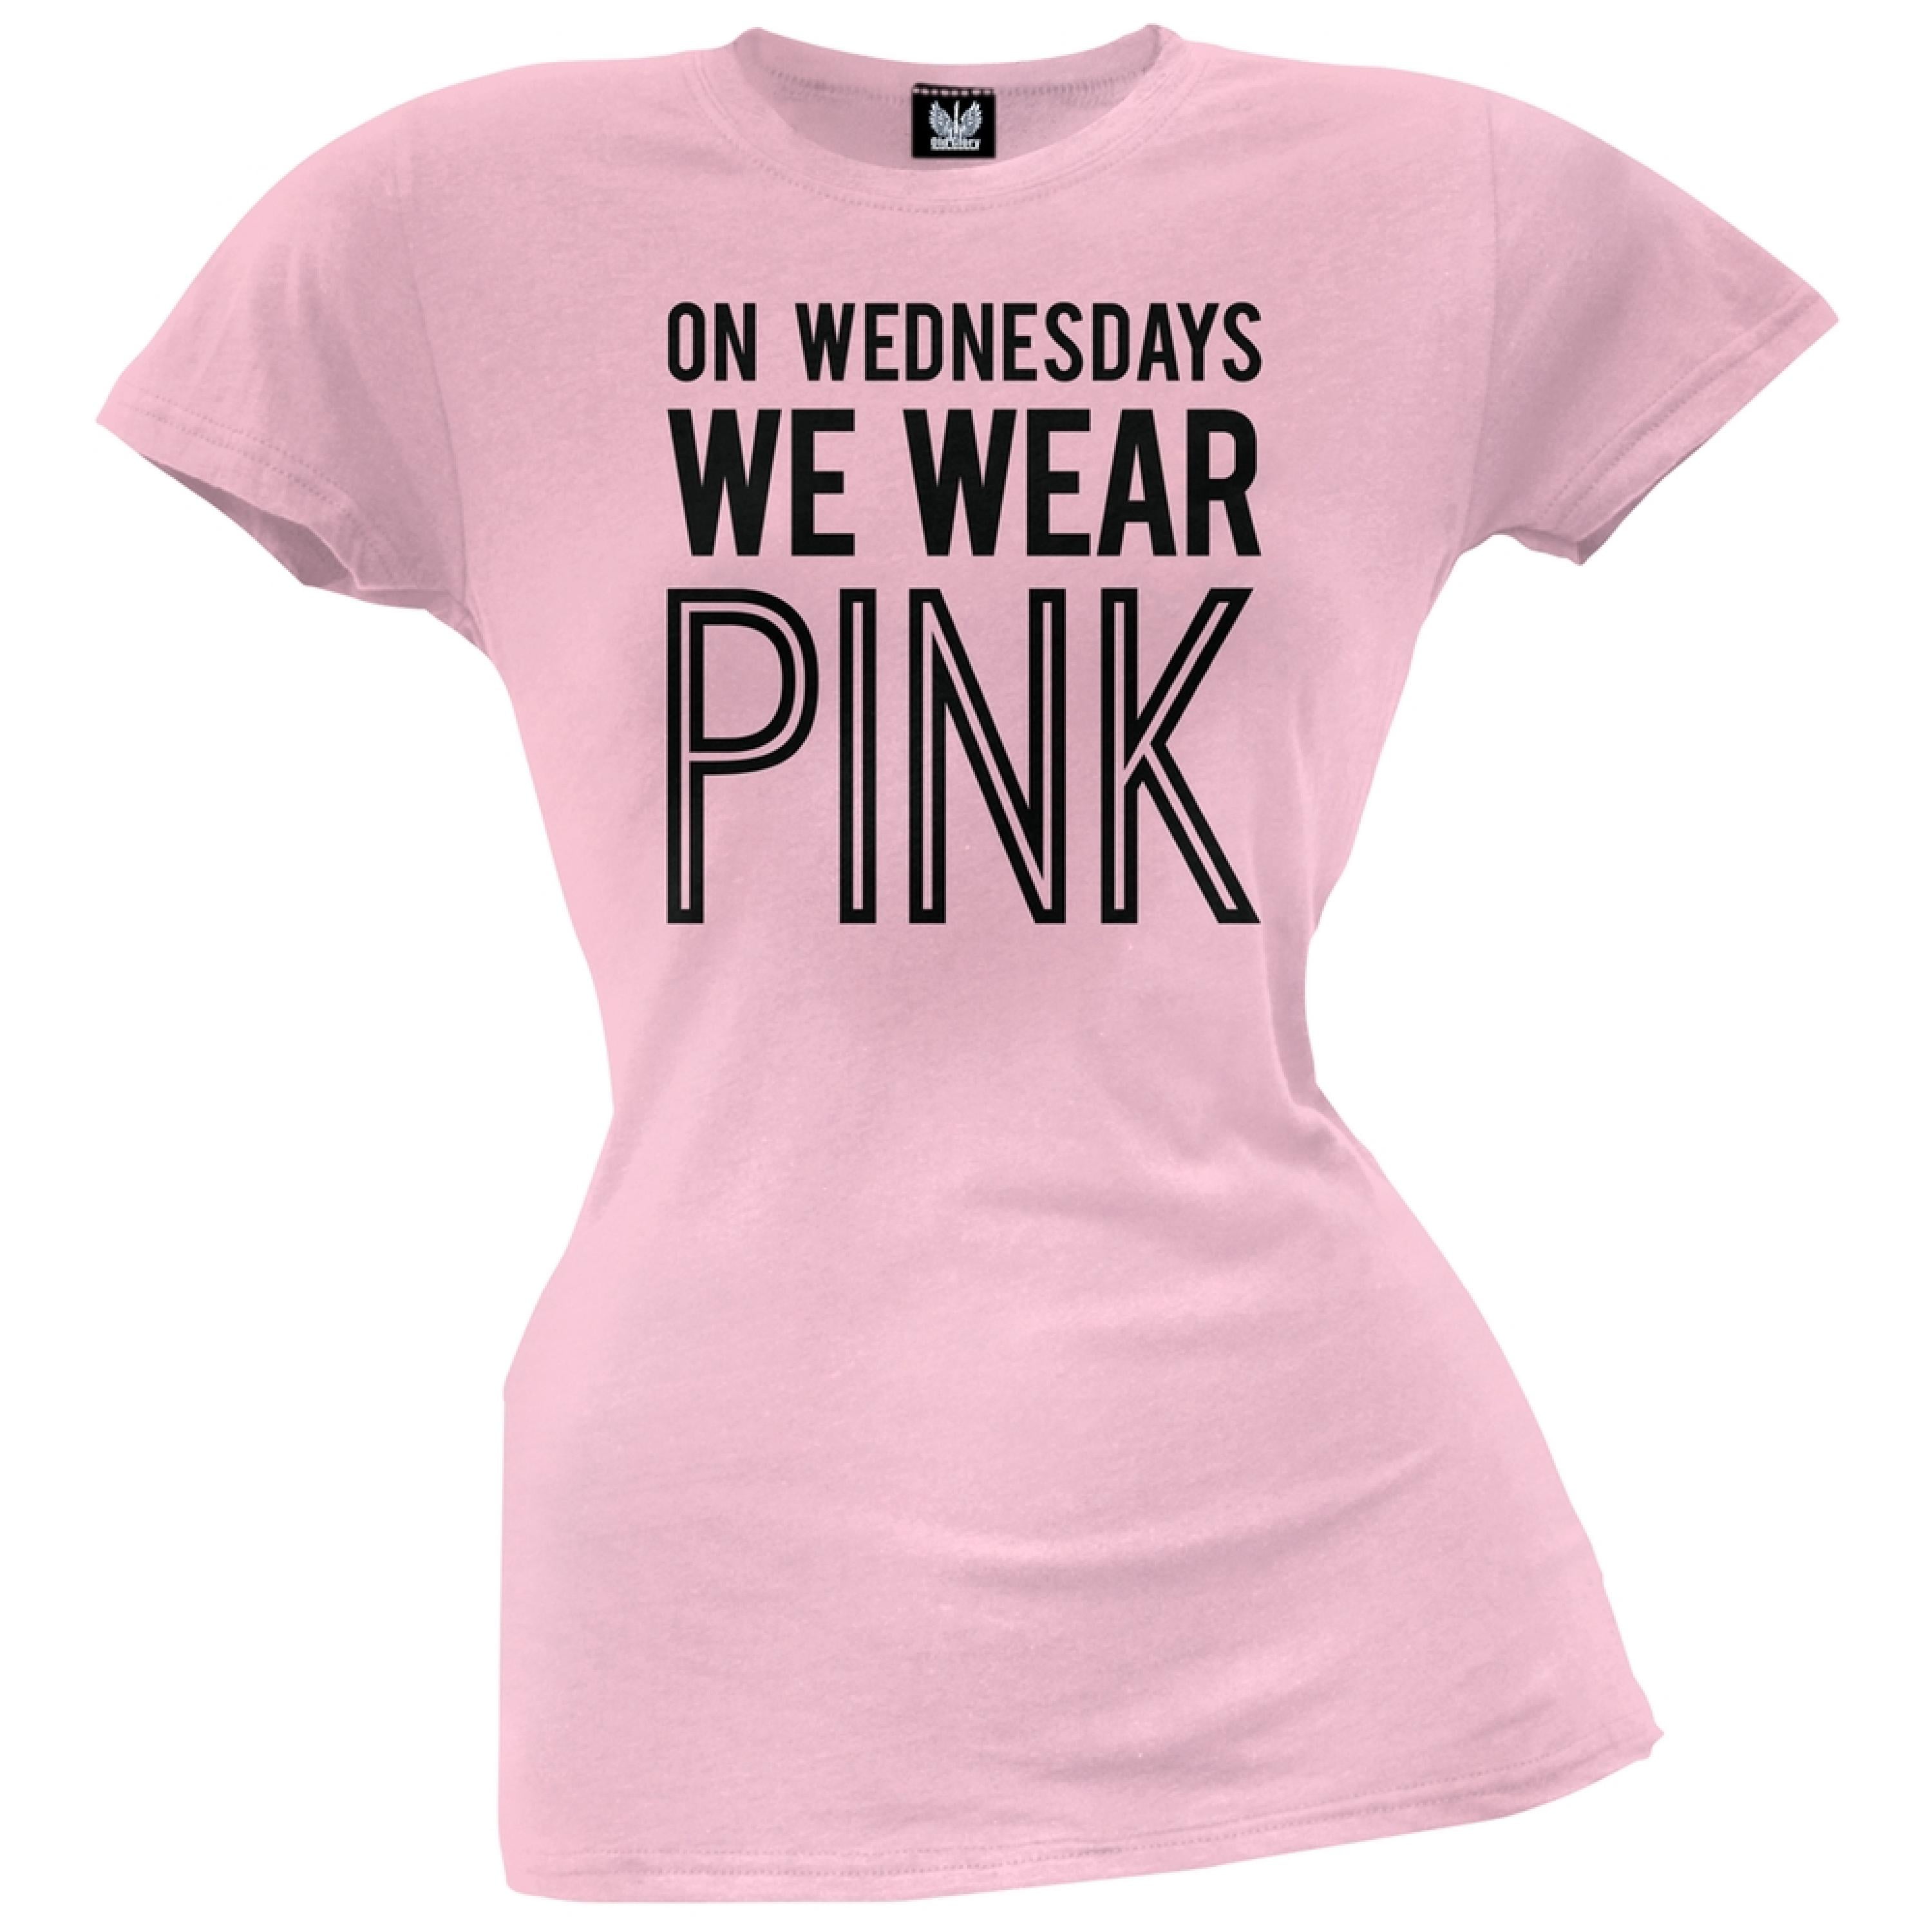 Blue wear перевод. We Wear Pink футболка. On Wednesday we Wear Pink. Одежда Wednesday. Футболка Wednesday женская.